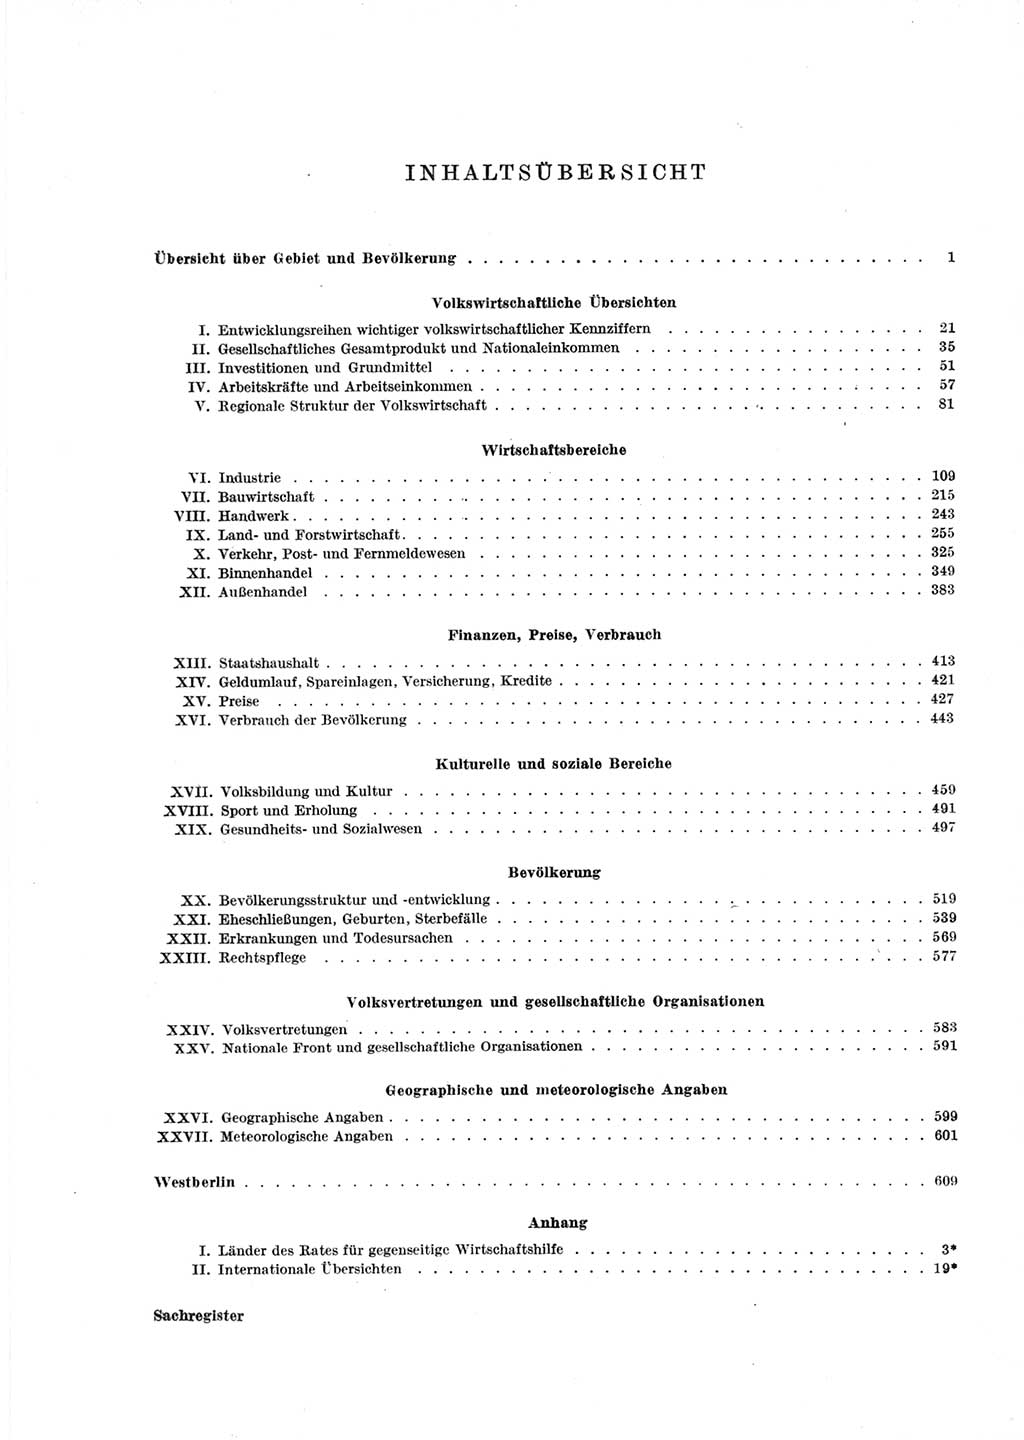 Statistisches Jahrbuch der Deutschen Demokratischen Republik (DDR) 1967, Seite 5 (Stat. Jb. DDR 1967, S. 5)